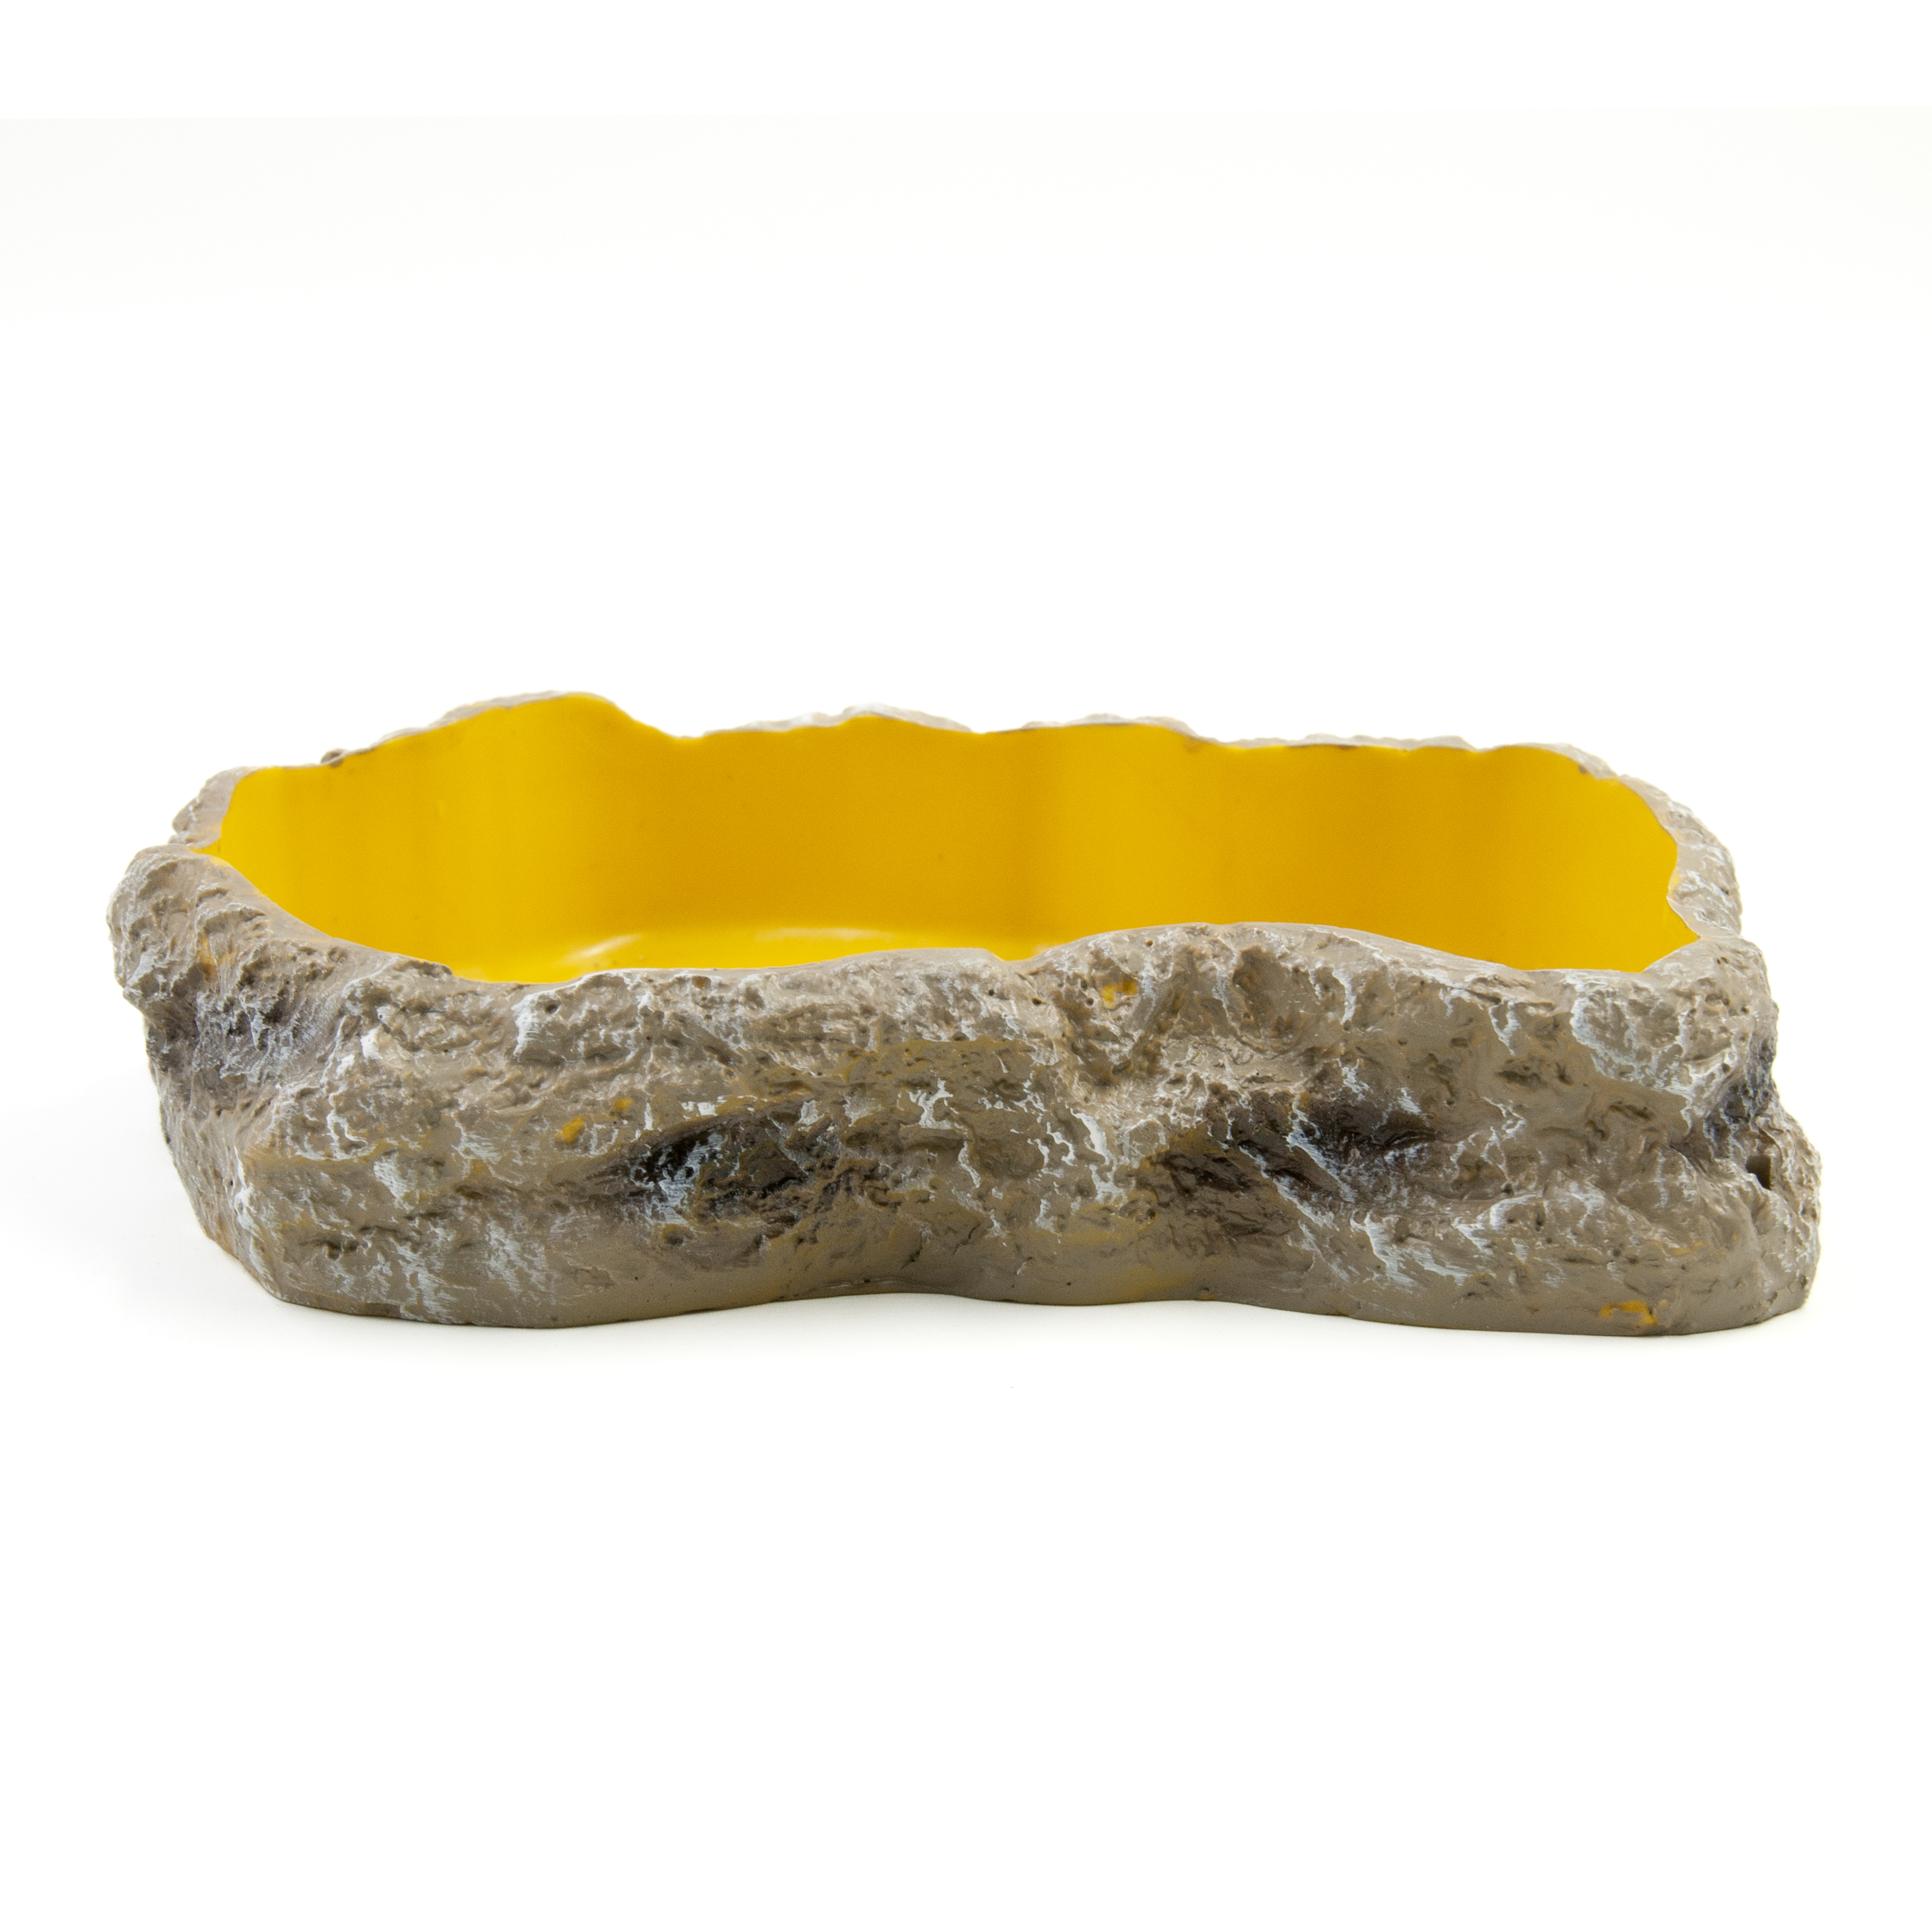 Поилка-кормушка для рептилий MCLANZOO Bowls, желтая, 18.5х13.0х3.9см